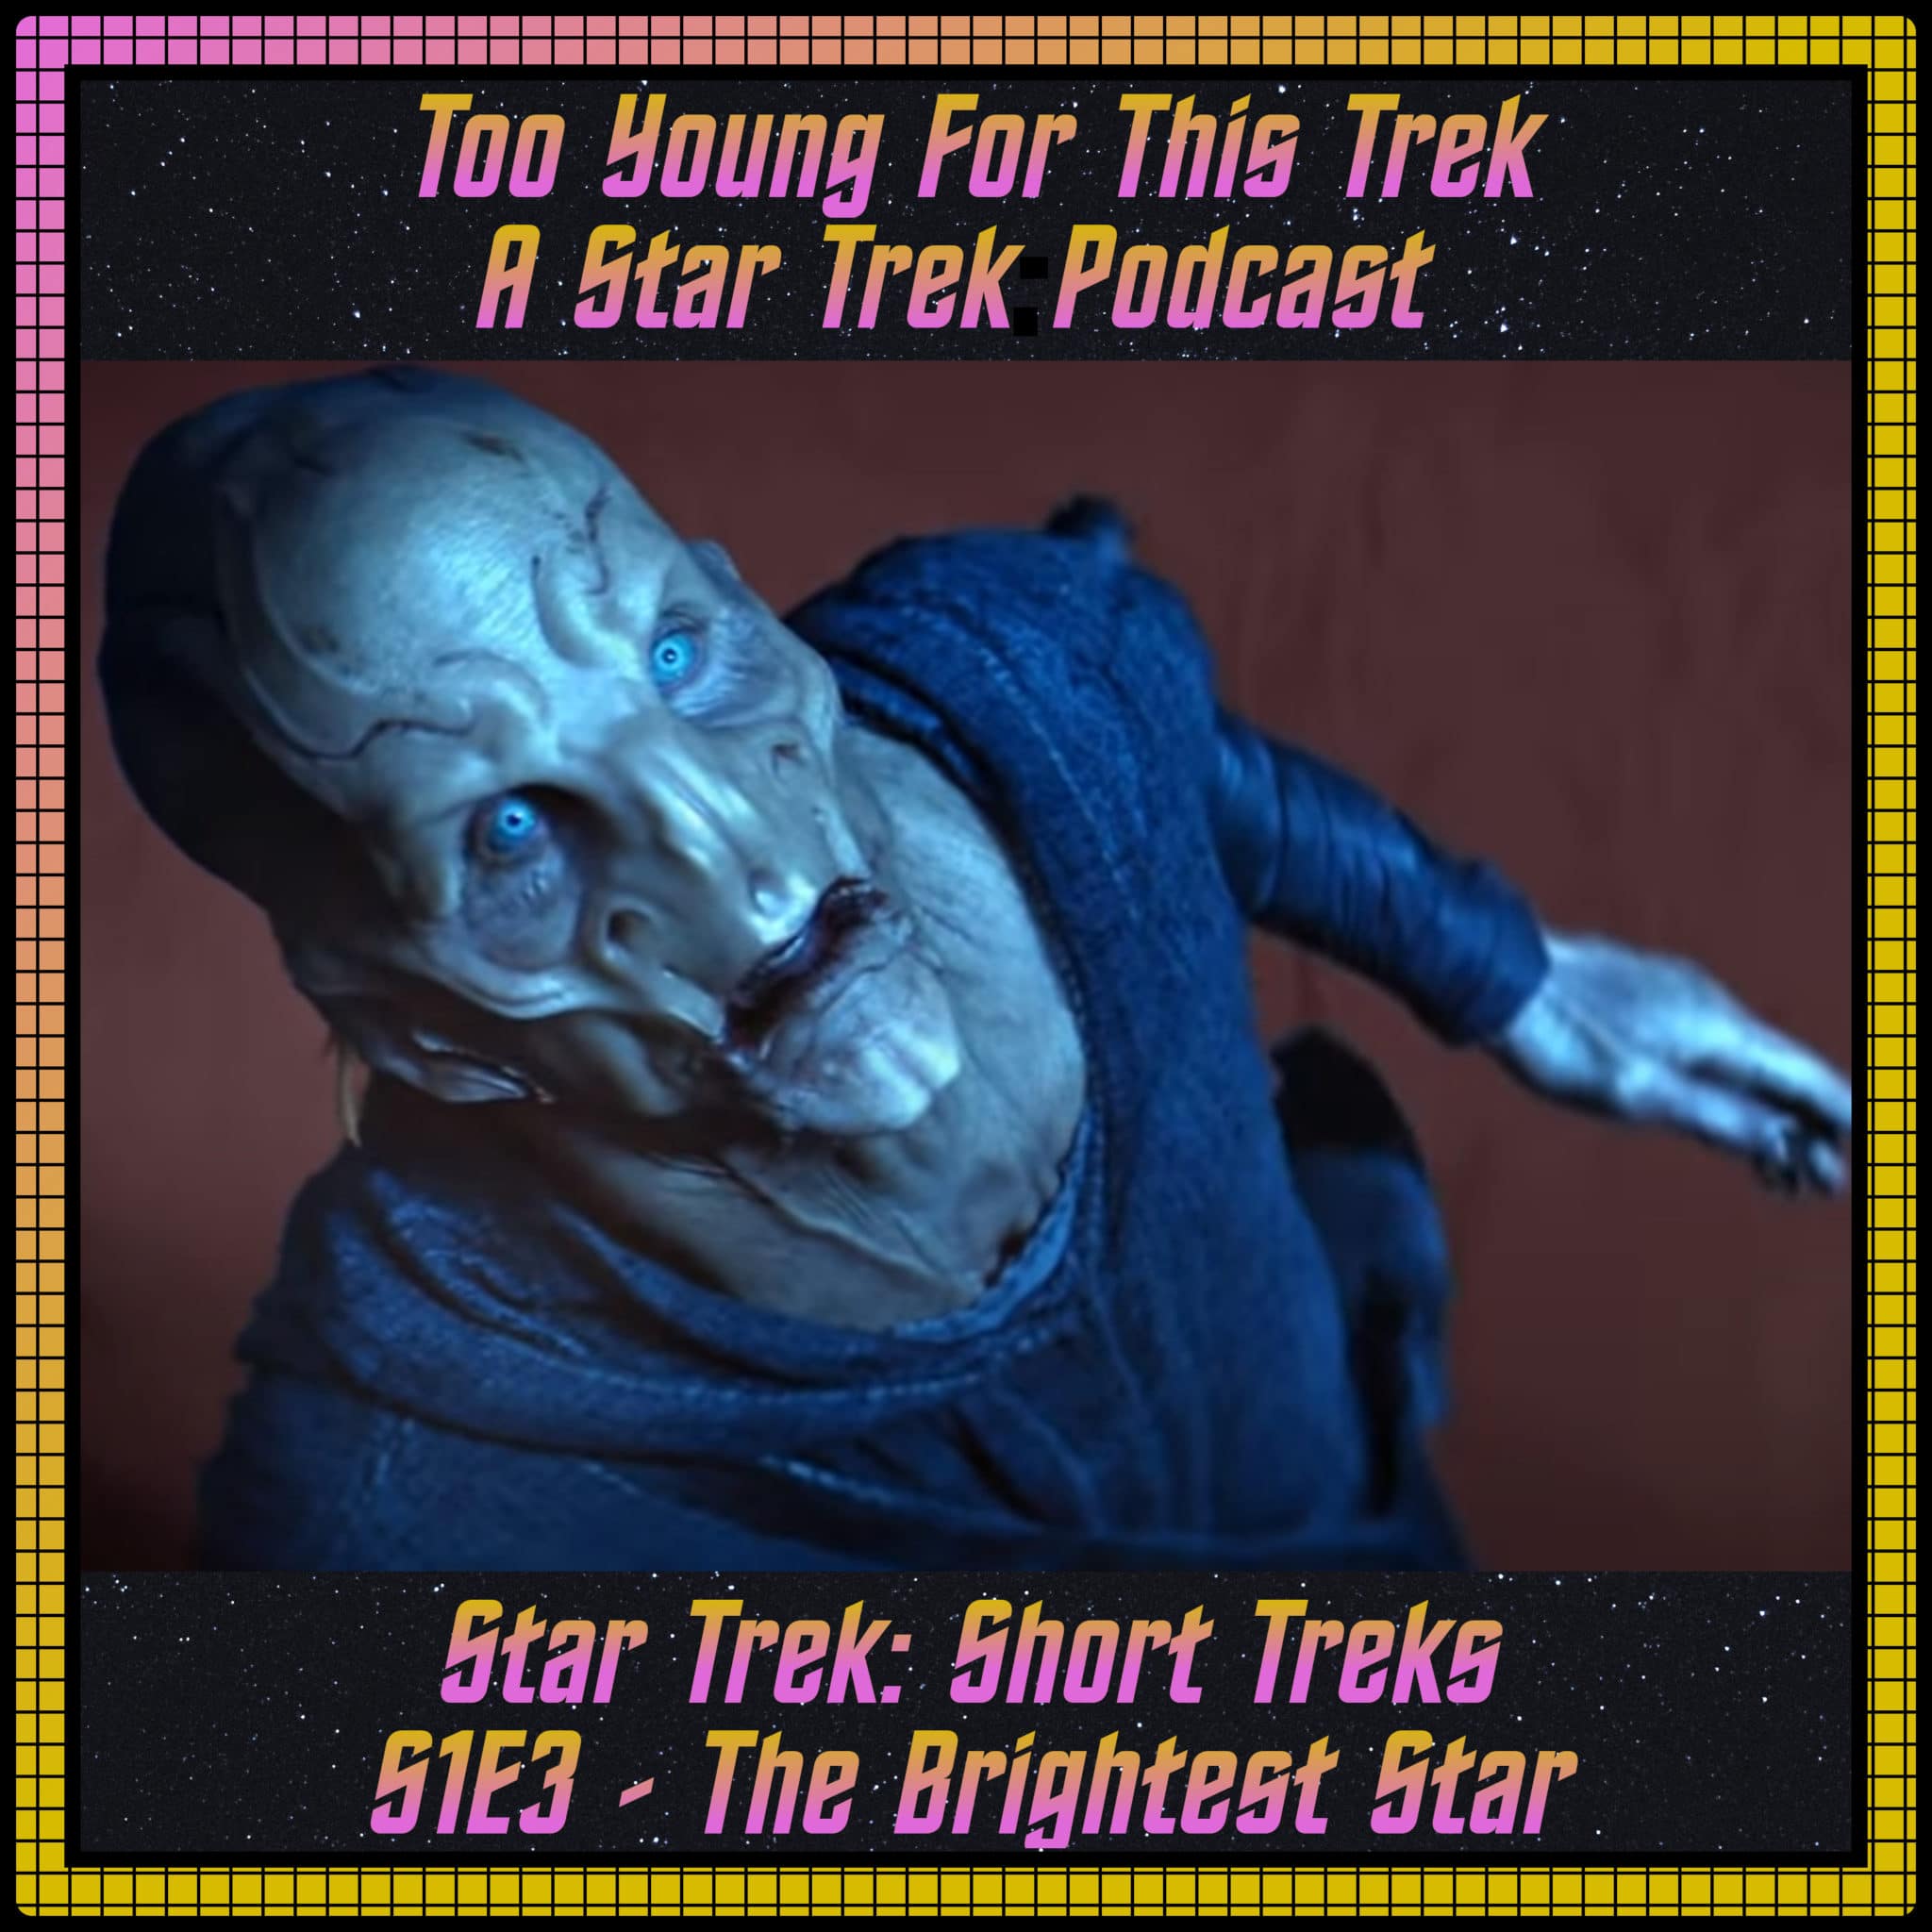 Star Trek: Short Treks S1E3 - The Brightest Star